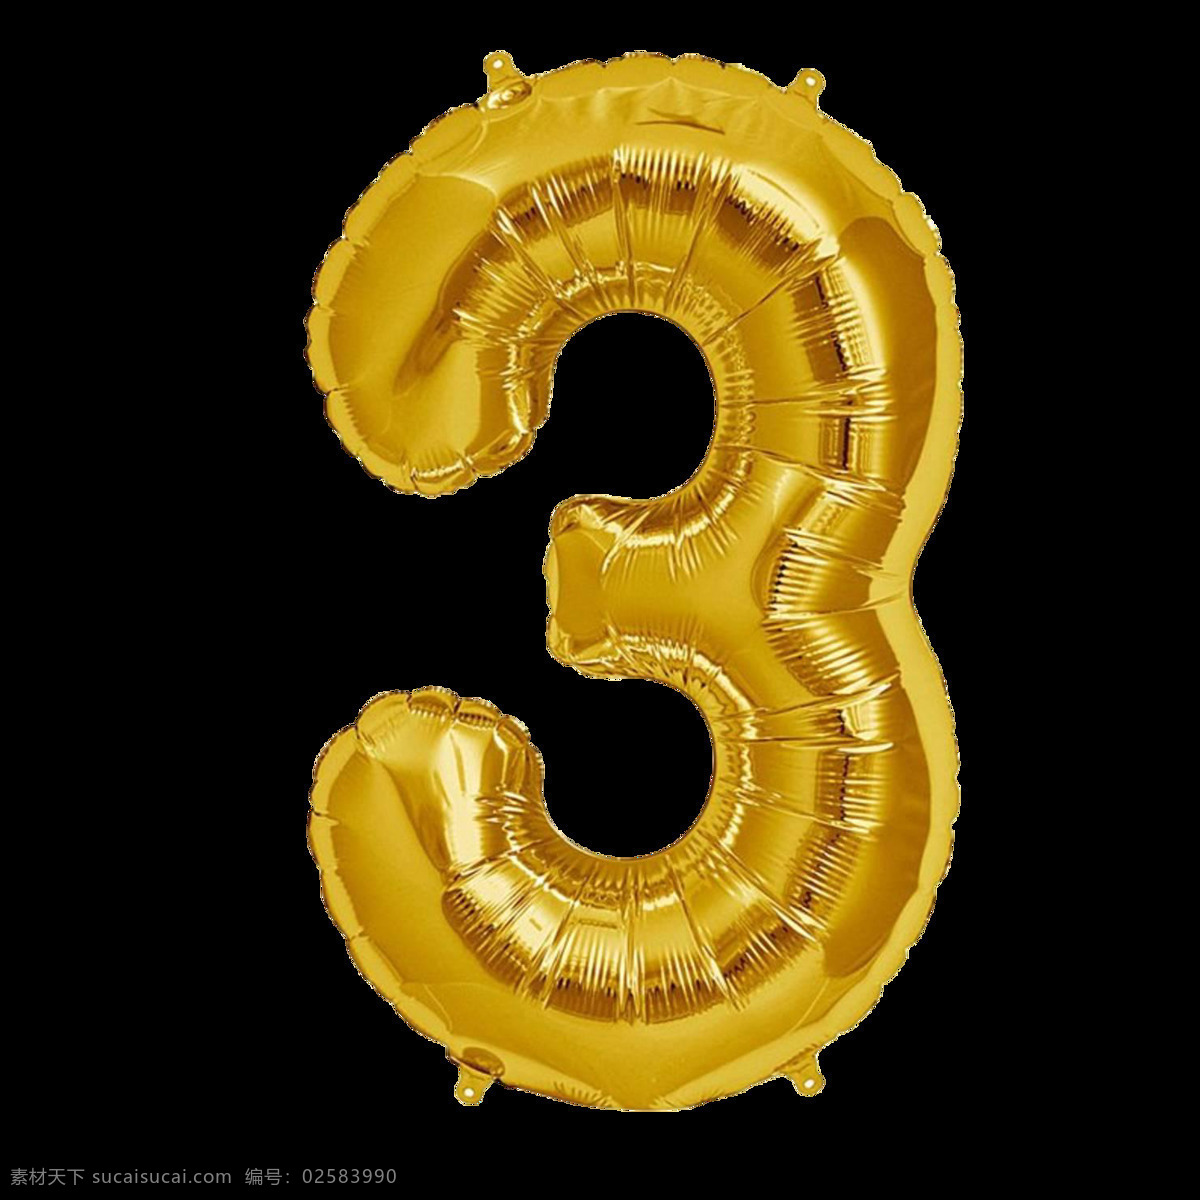 金色气球字3 金色气球字 气球字 气球数字 铝膜气球字母 装饰字 派对气球 气球文字 字母气球 铝箔气球 3d设计 3d作品